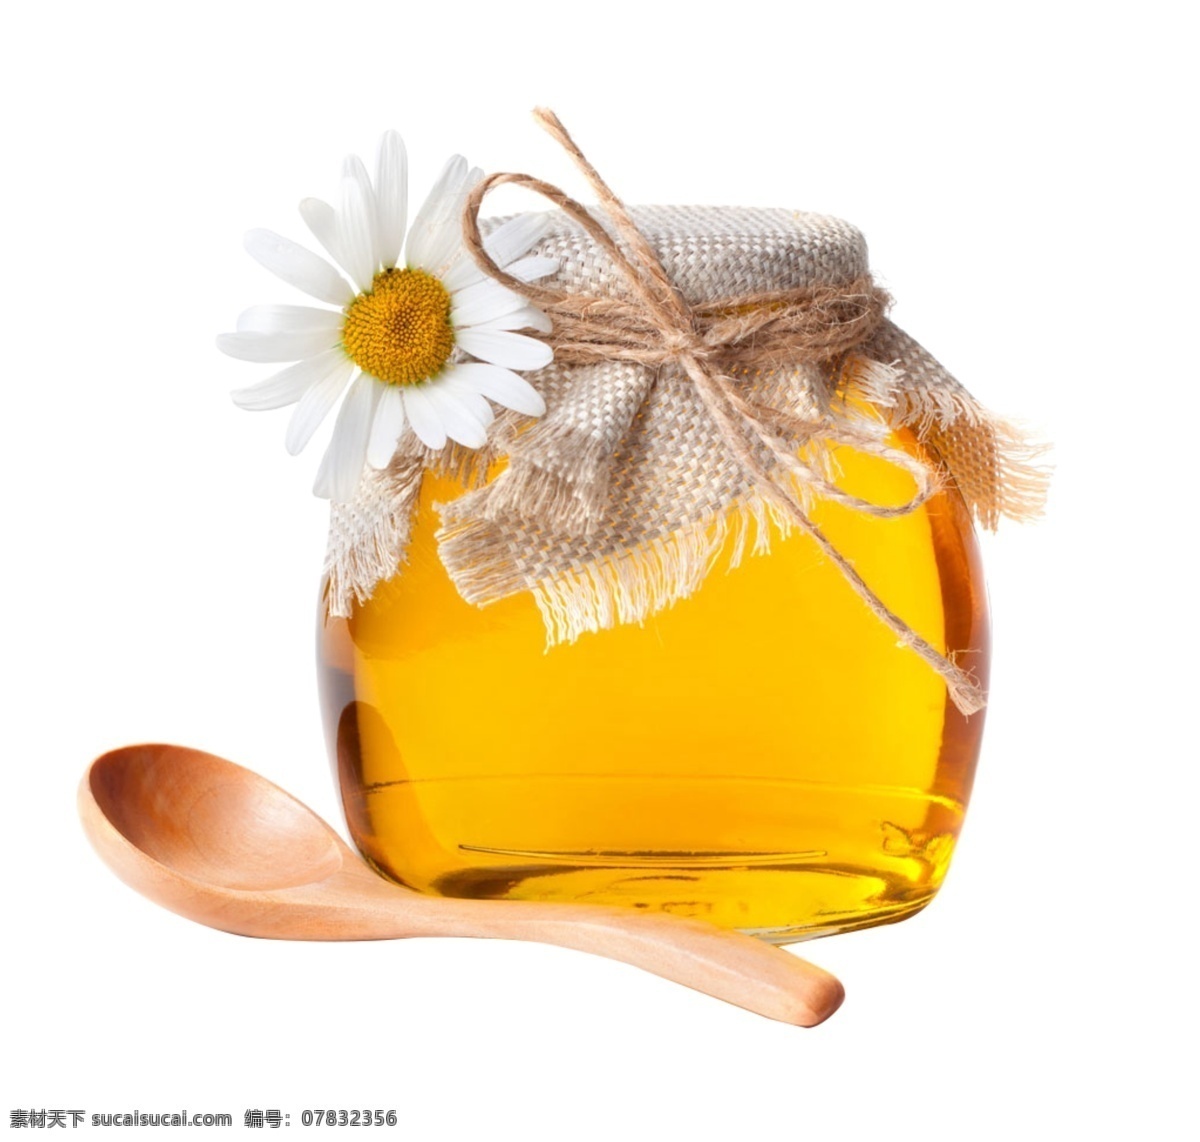 蜂蜜 蜂胶 营养 药用 花朵 食物 密封